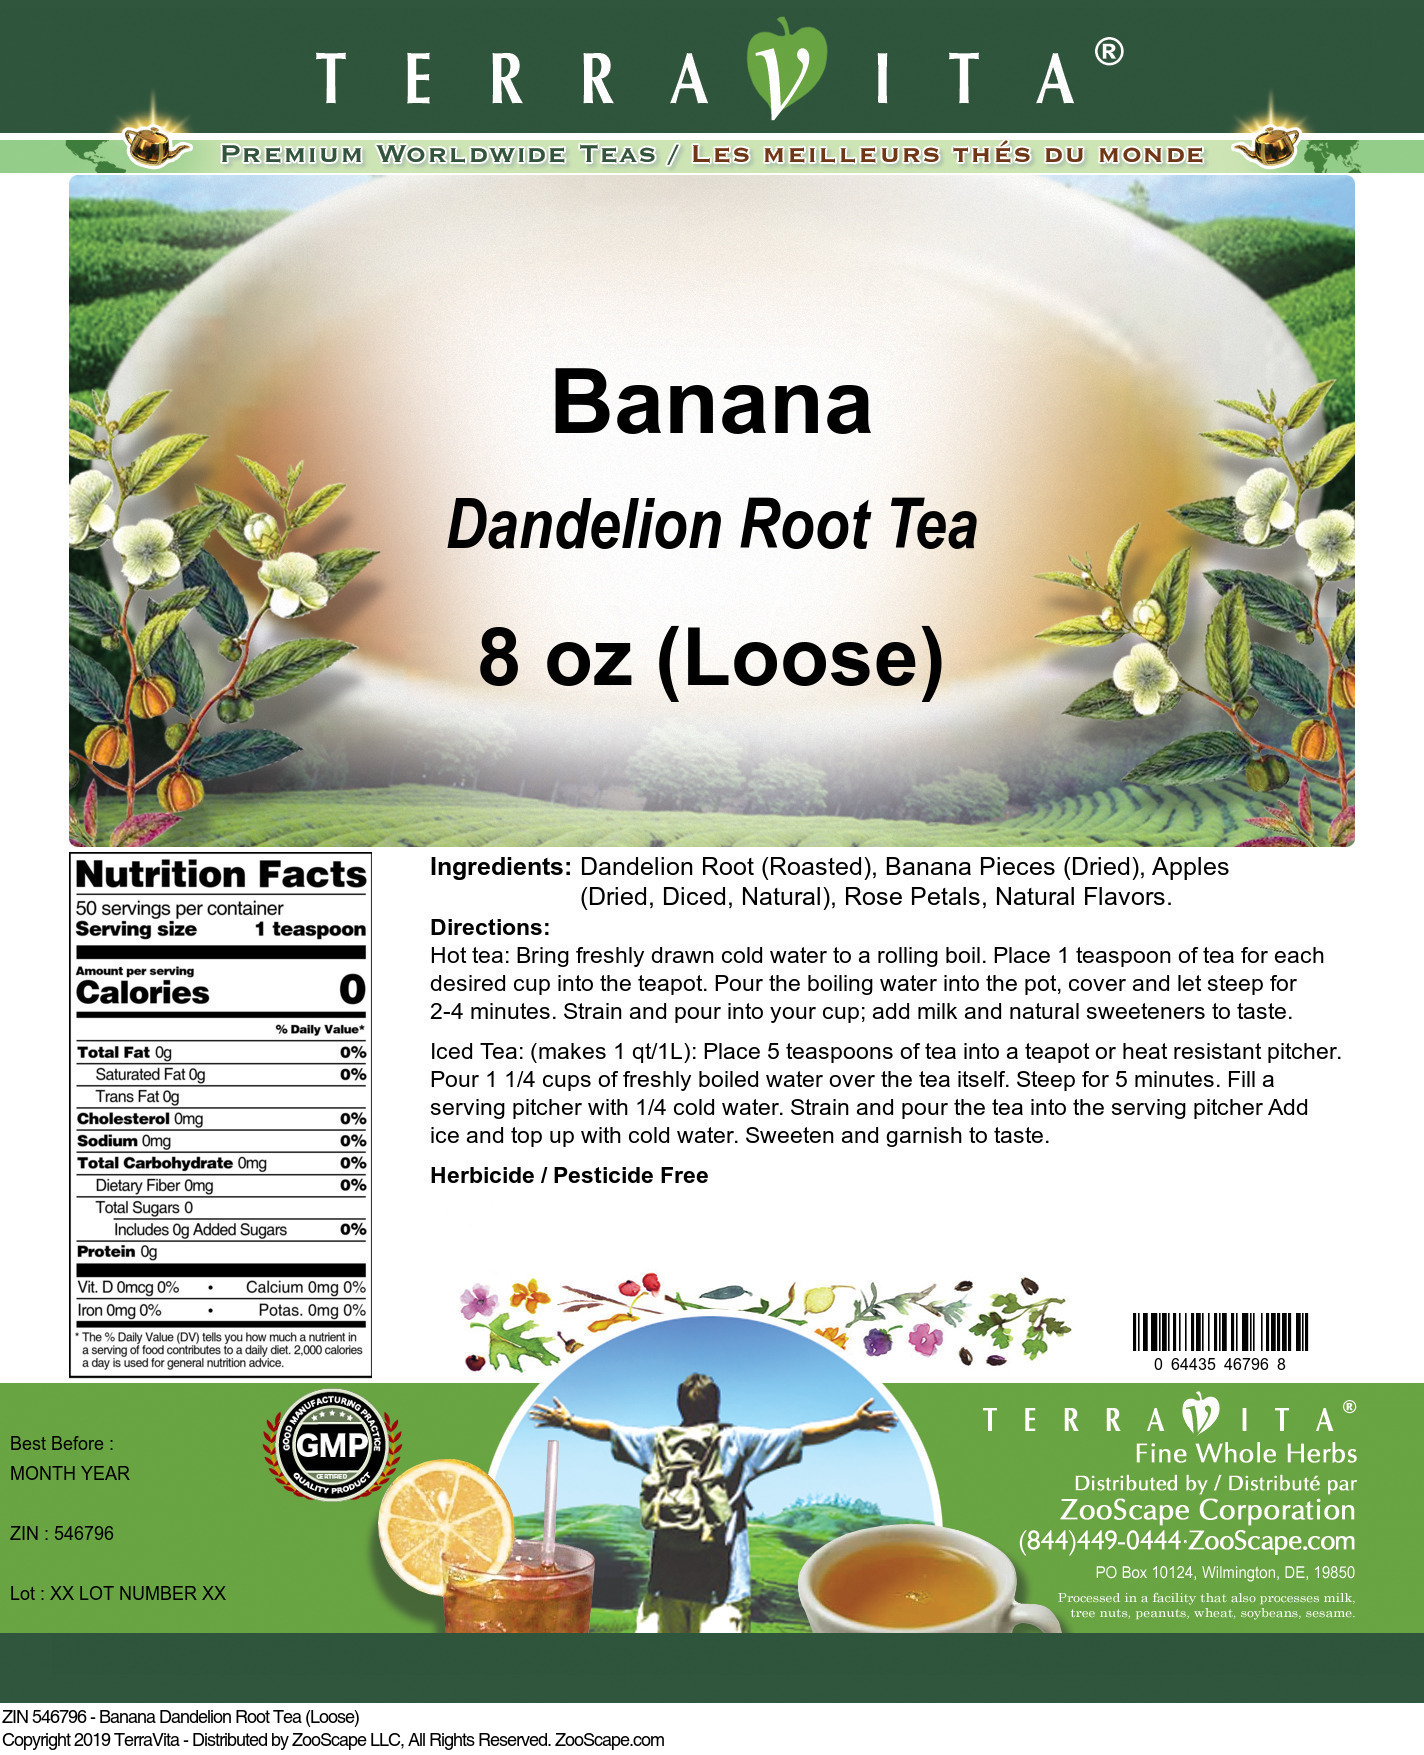 Banana Dandelion Root Tea (Loose) - Label